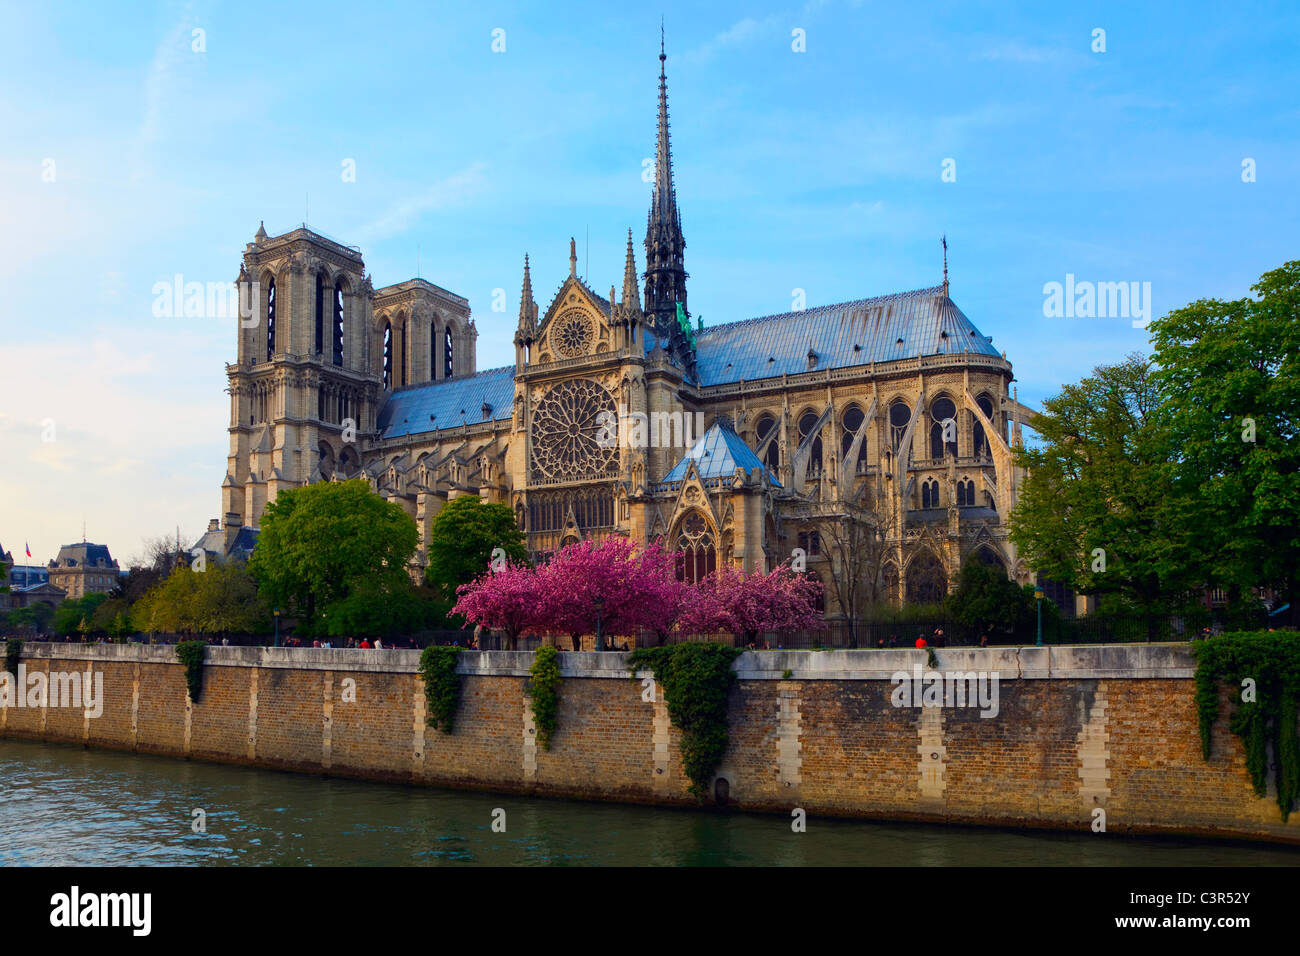 Notre Dame de Paris. View on cathedral across the Seine river. Paris, France. Stock Photo